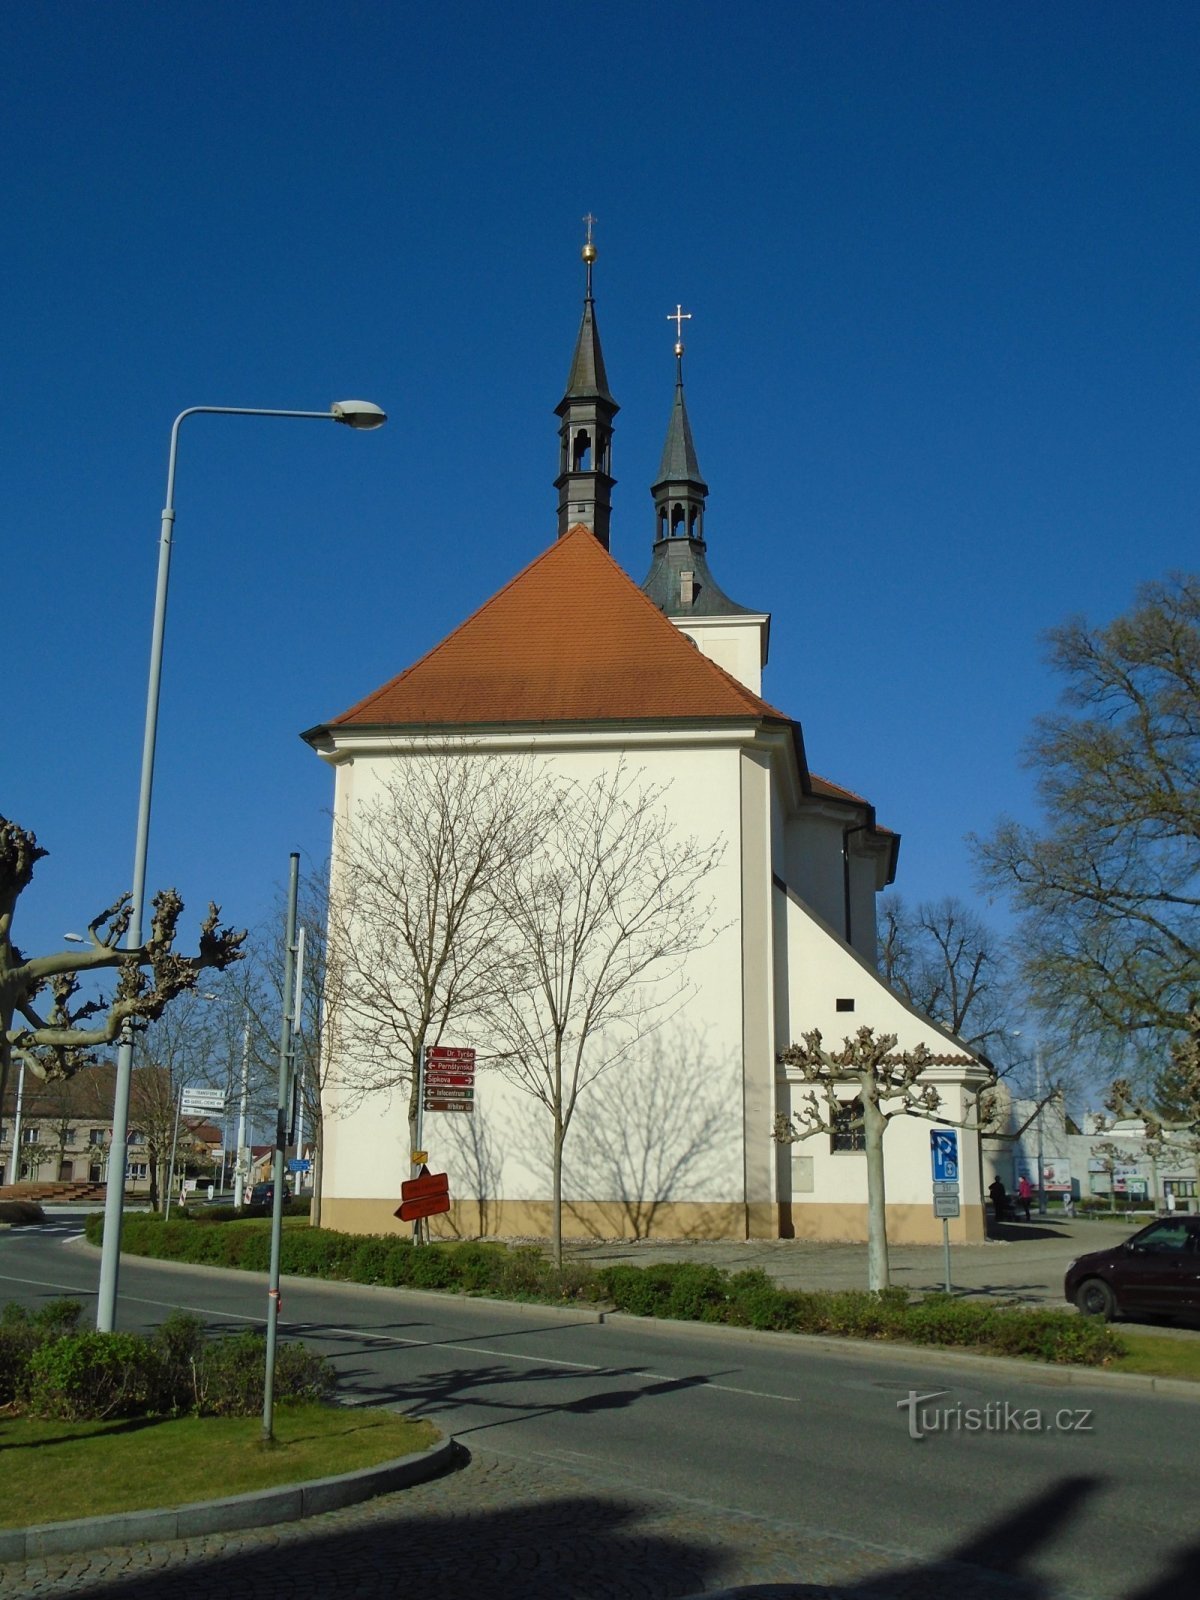 Biserica Sf. Maria Magdalena (Lázně Bohdaneč, 21.4.2019 aprilie XNUMX)